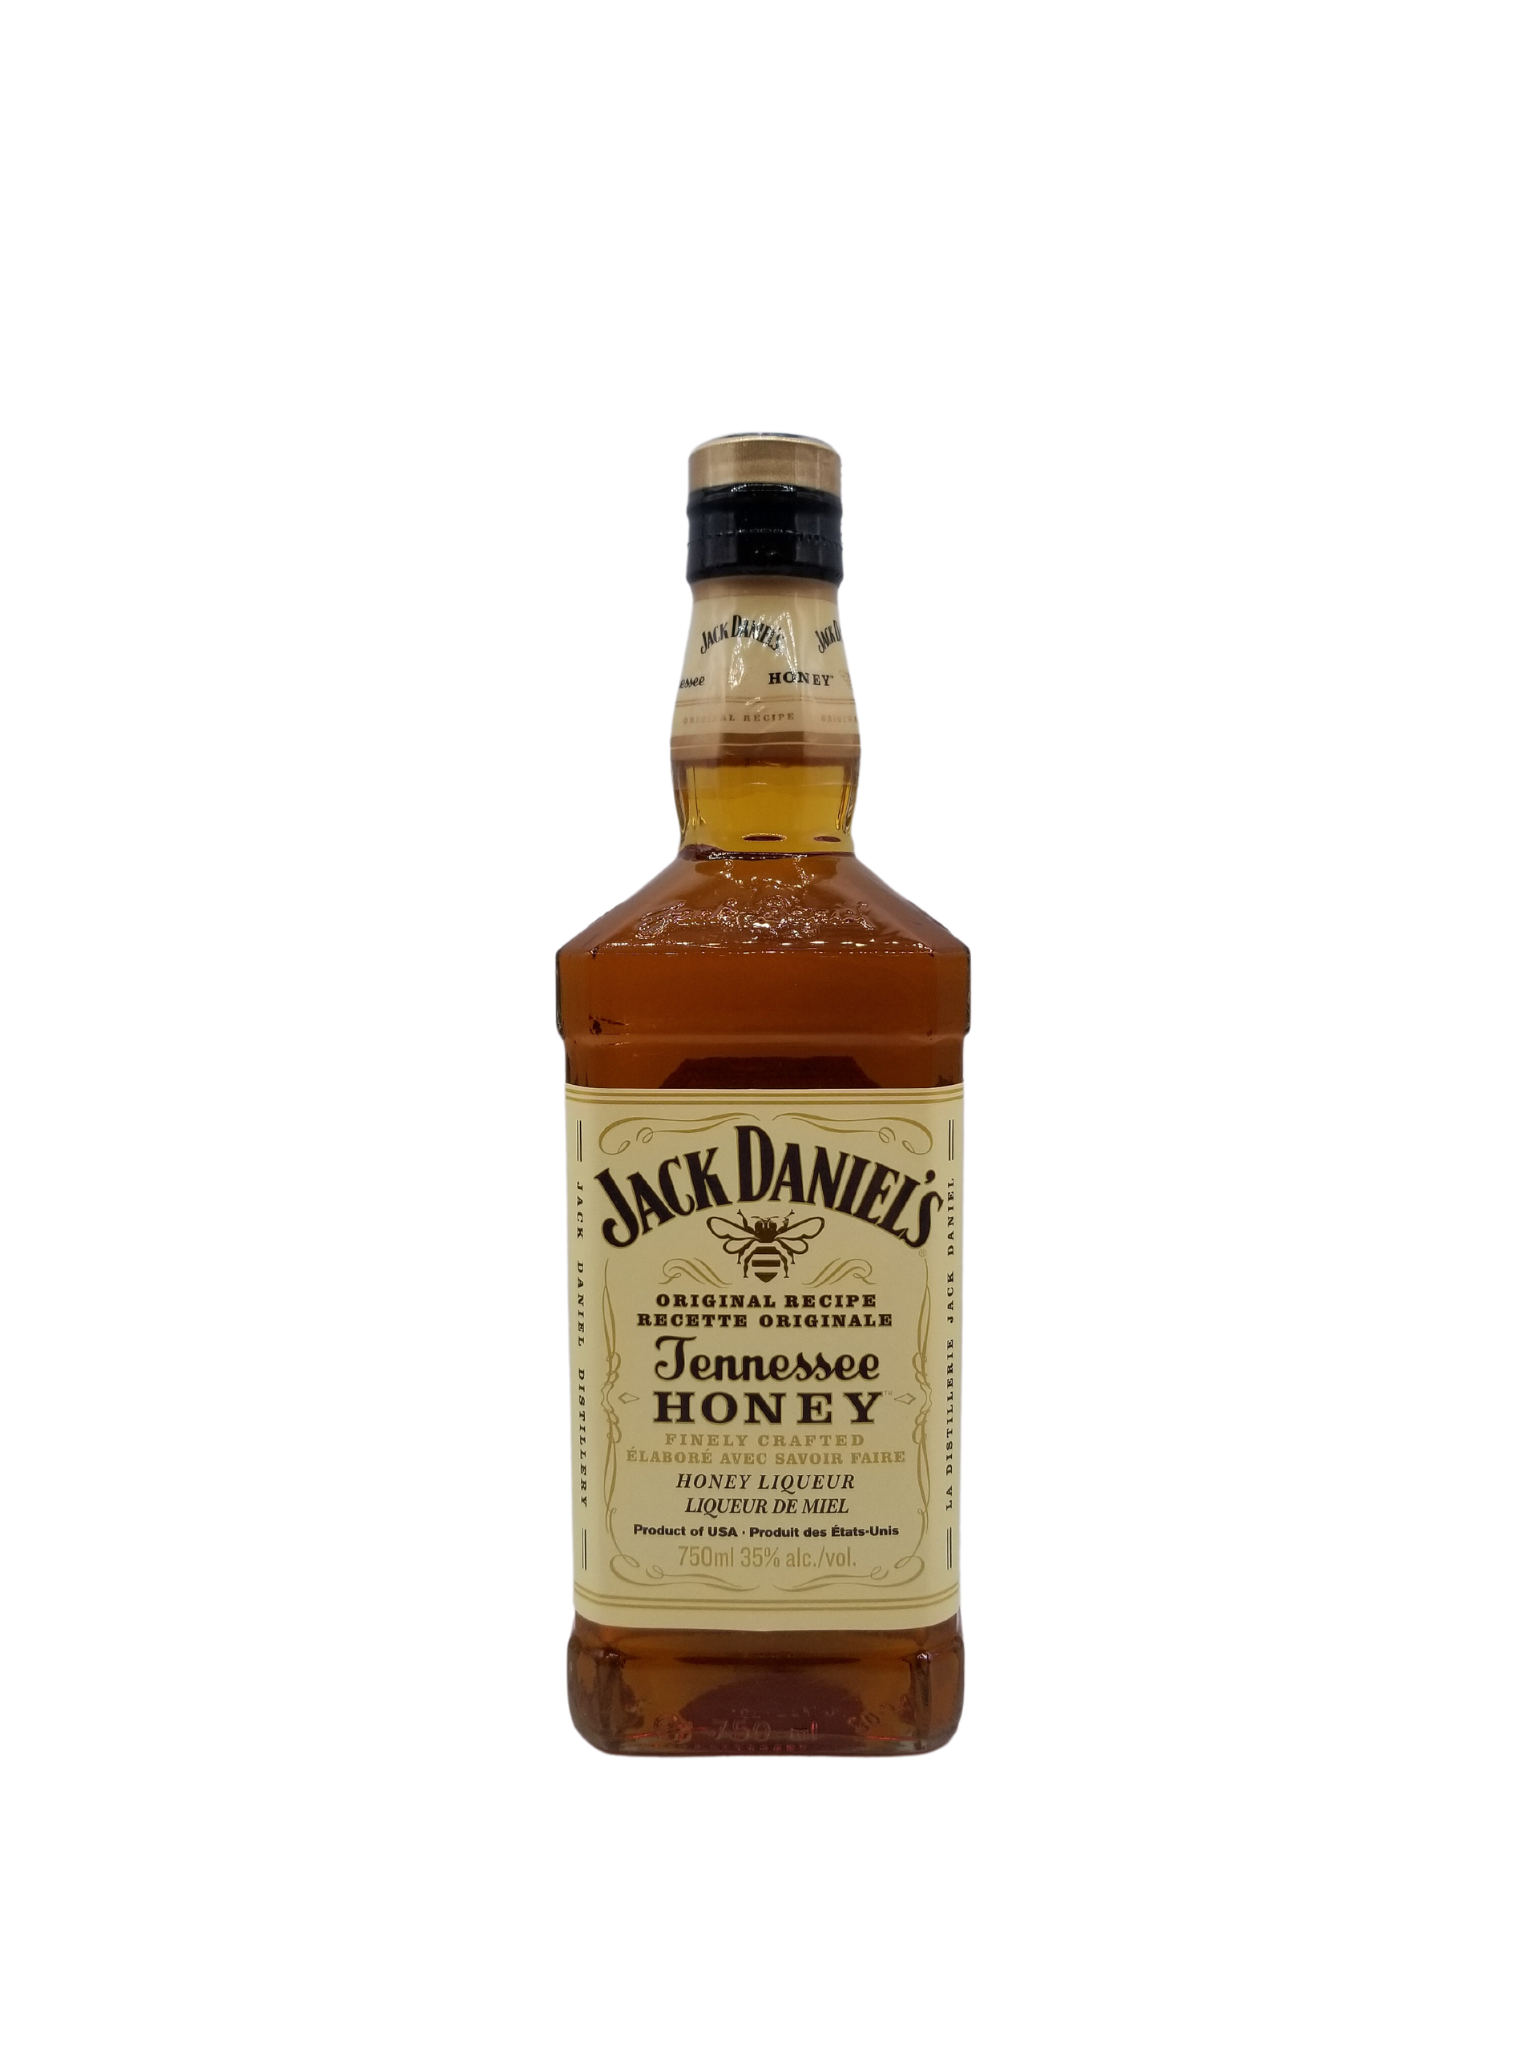 Jack Daniels Tennessee Honey 750ml - The Alberta Beer Exchange